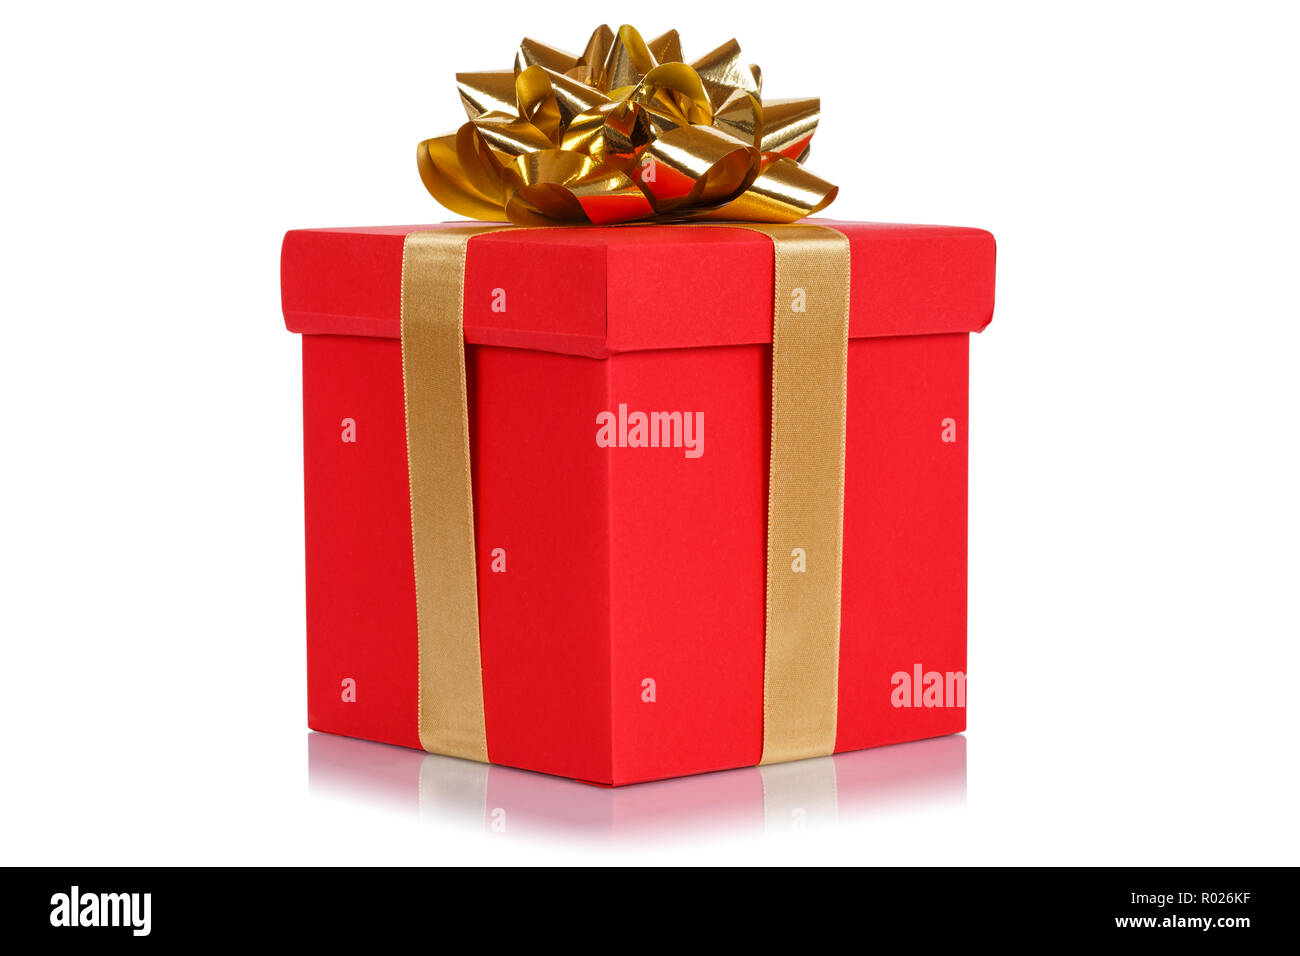 Présent cadeau Anniversaire Mariage Noël tiens case rouge isolé sur fond blanc Banque D'Images